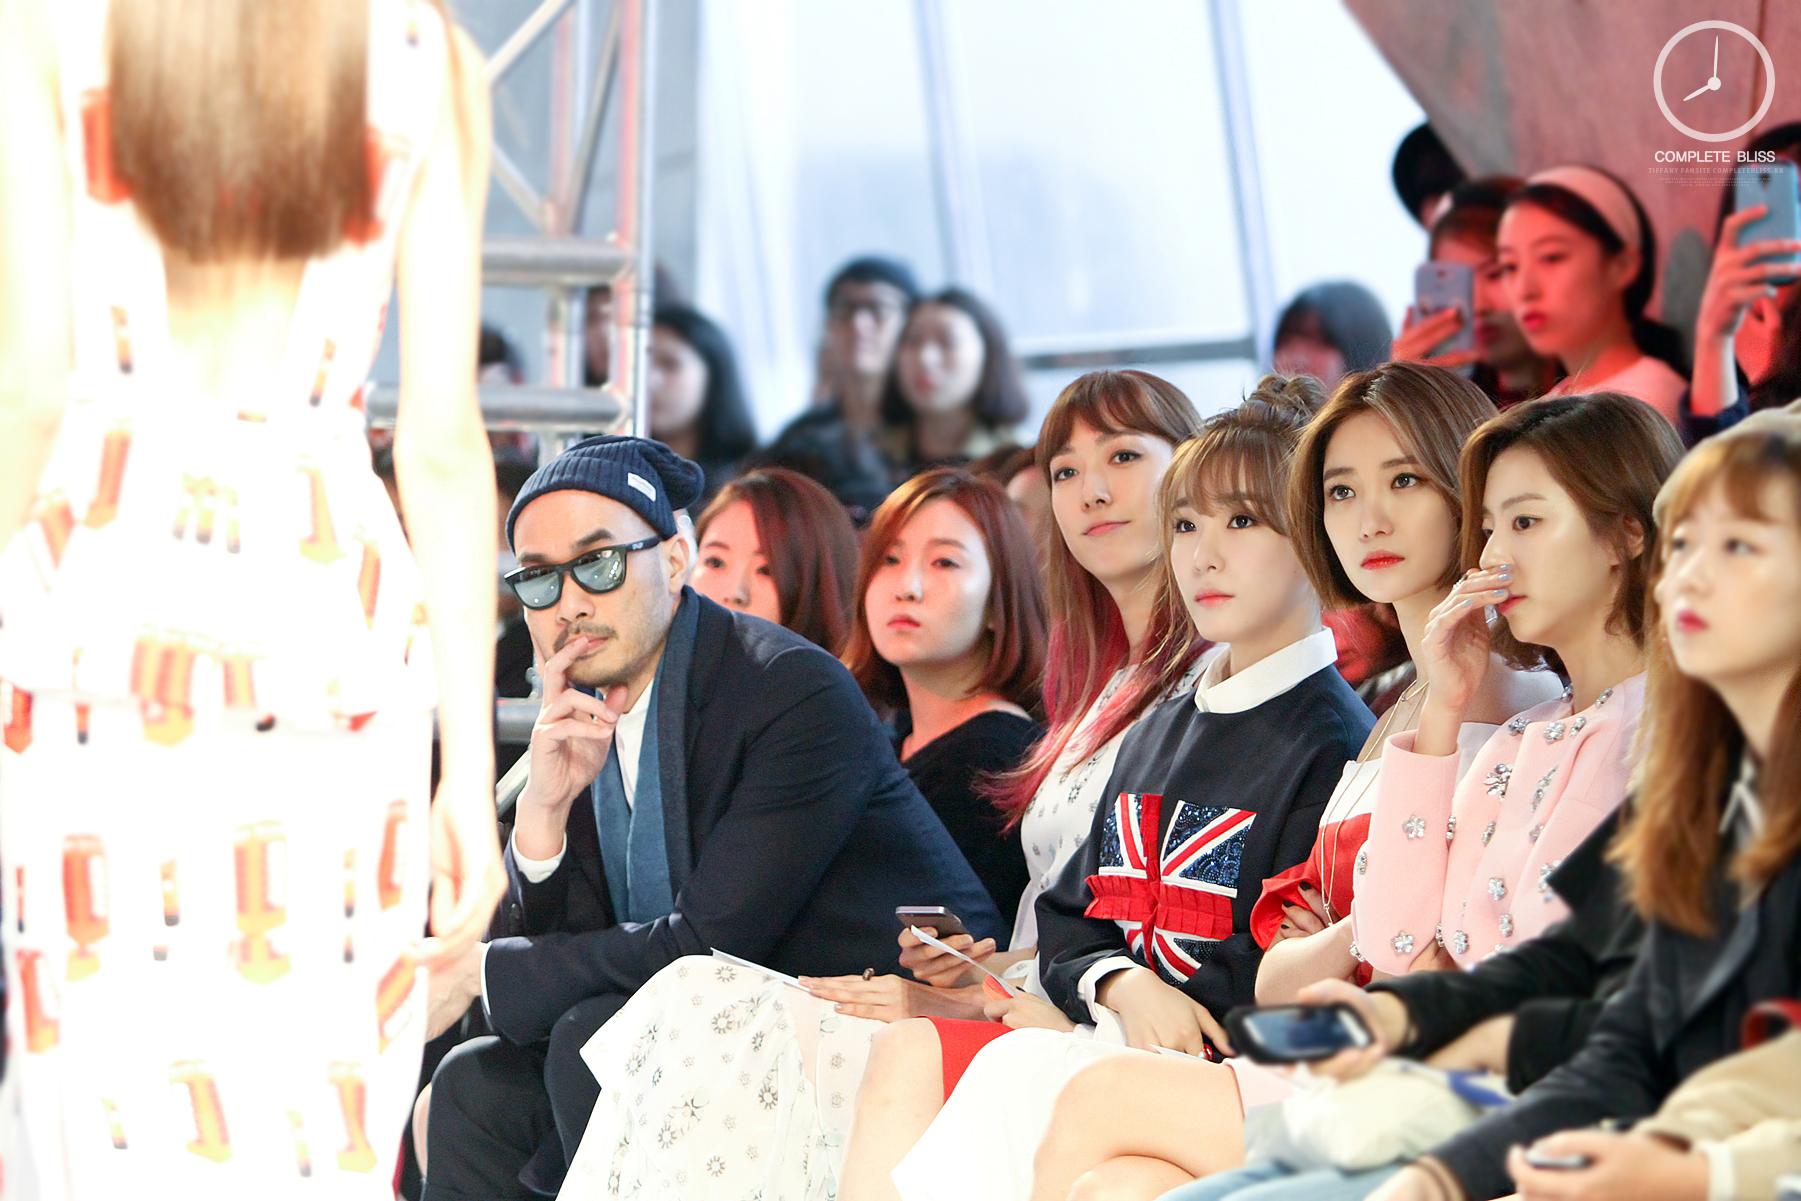 [PIC][20-10-2014]Tiffany xuất hiện tại buổi ra mắt BTS mới của thương hiệu "Arche" trong khuôn khổ tuần Lễ thời trang "2015 S/S SEOUL FASHION WEEK" vào chiều nay 16604632262_cd9ebe59d9_o